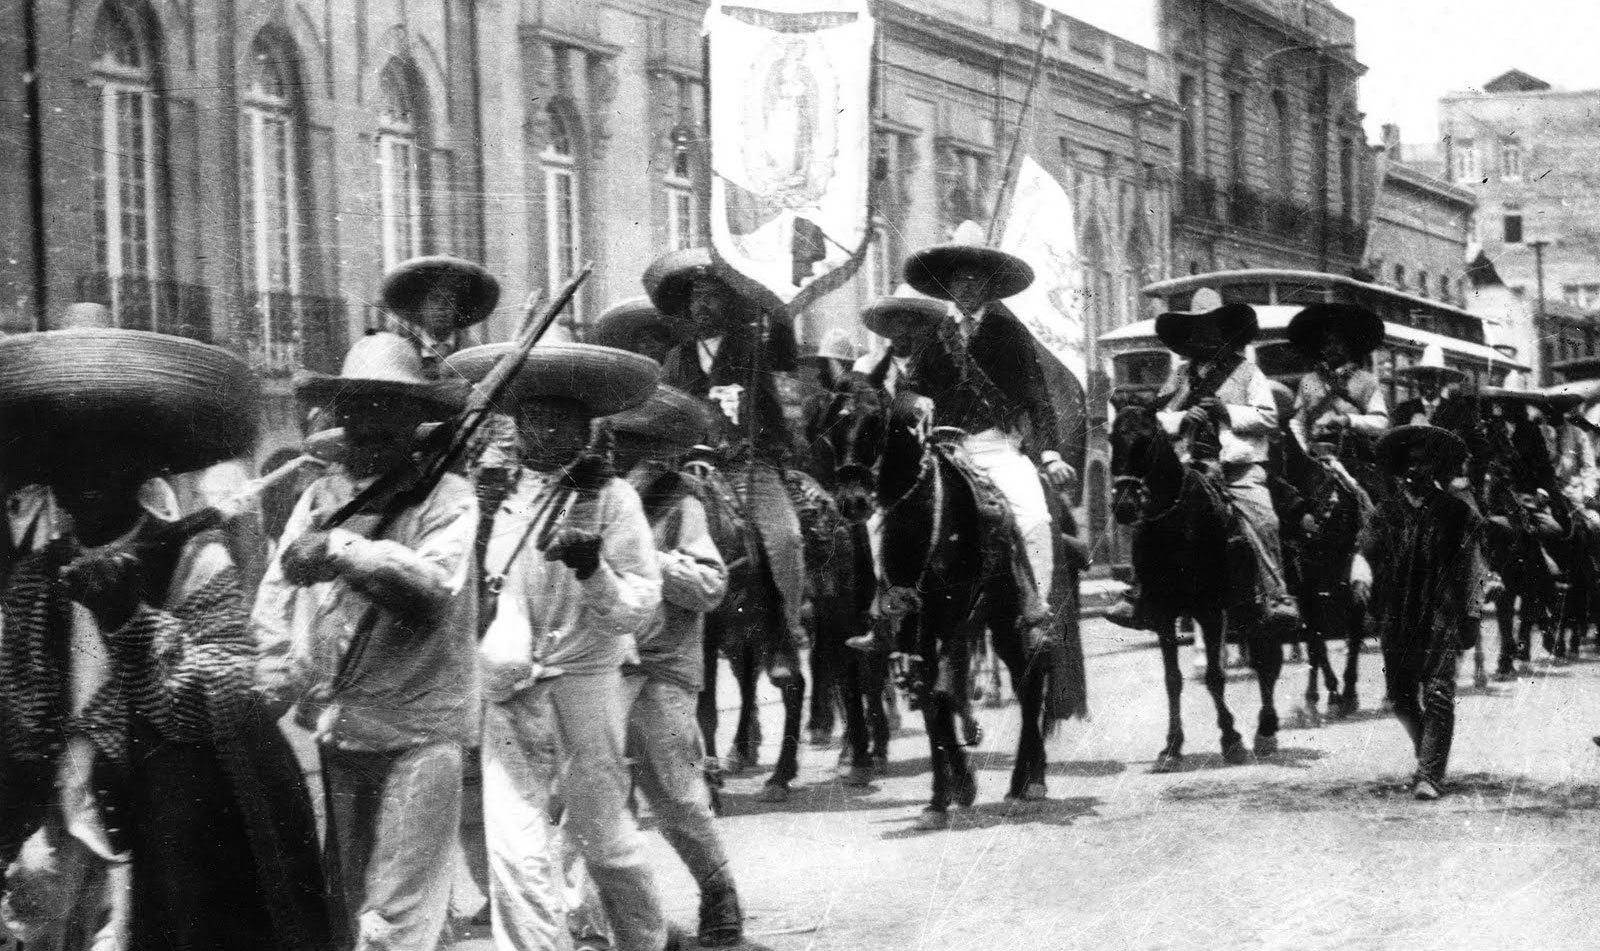 Las tropas villistas y zapatistas hicieron su entrada triunfal en Ciudad de México, luego de su alianza el 4 de diciembre de 1914.